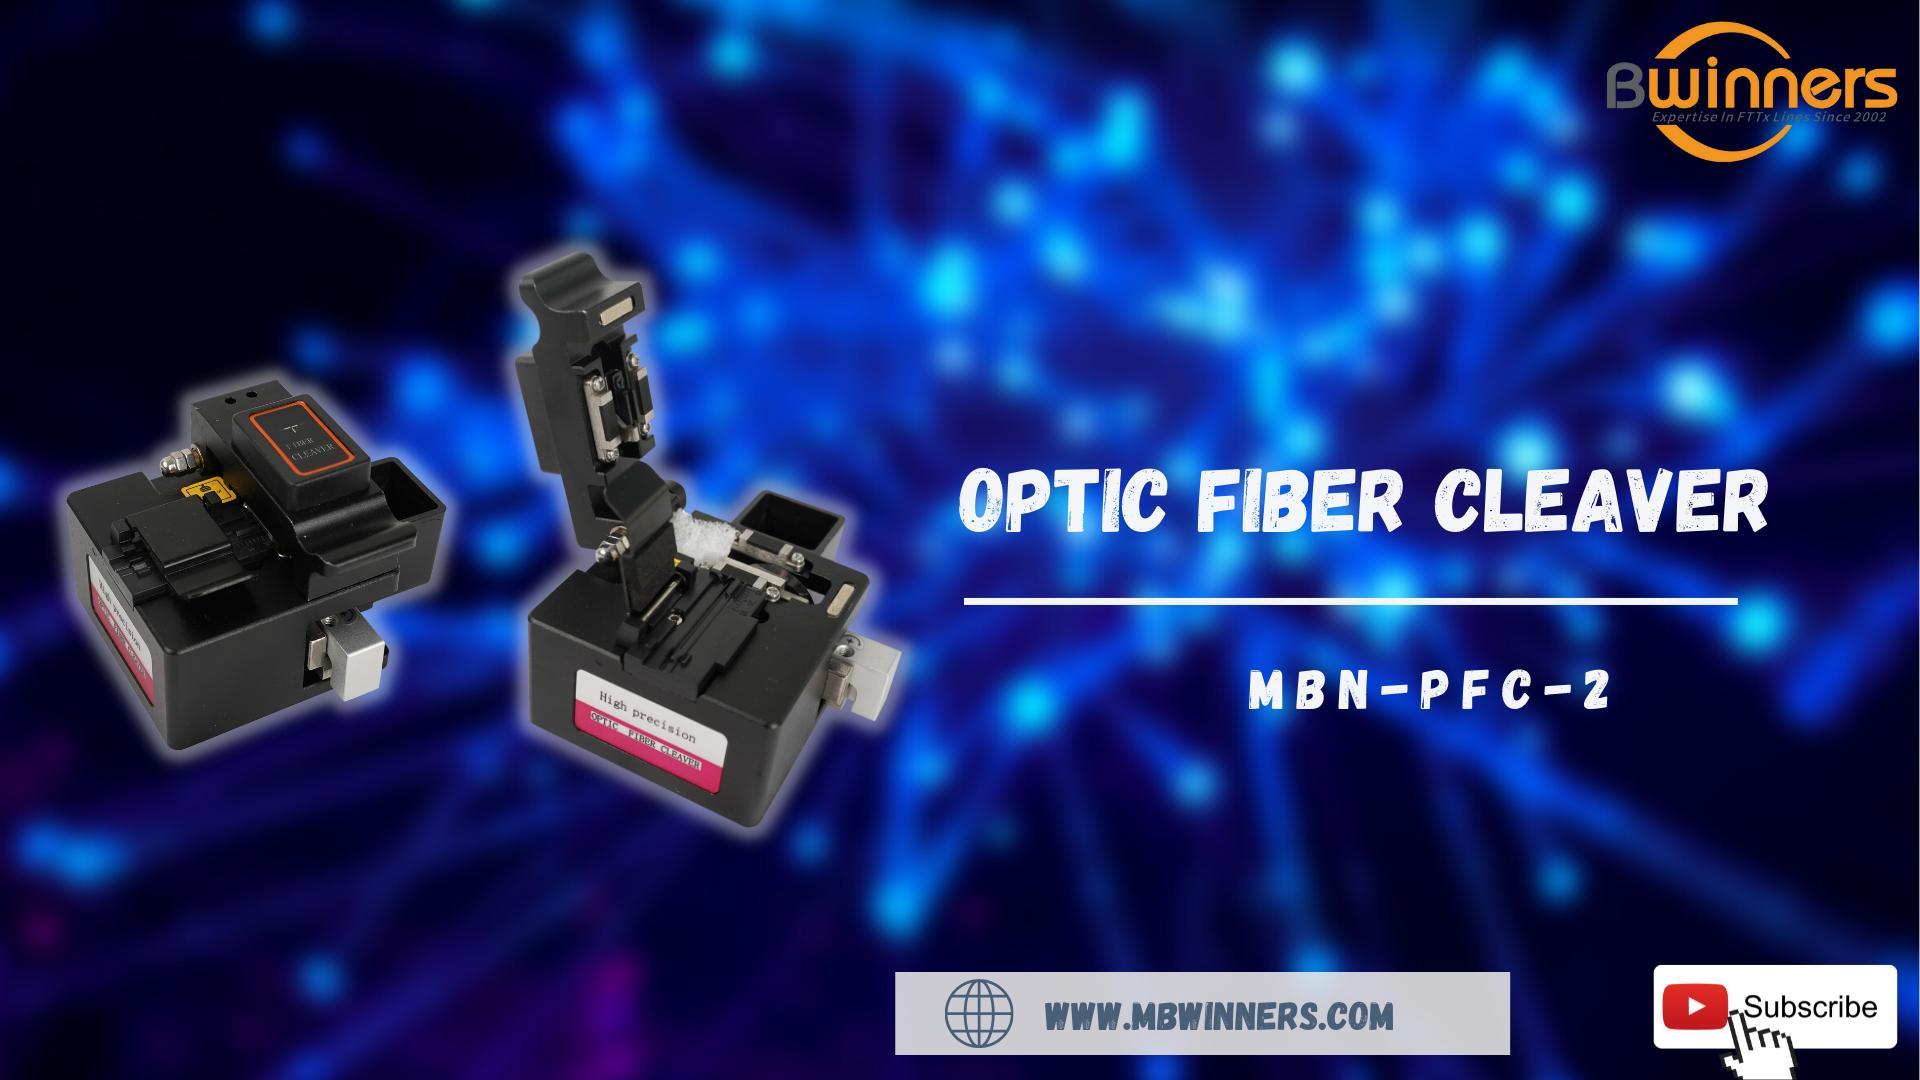  MBN-PFC-2 Optic Fiber Cleaver